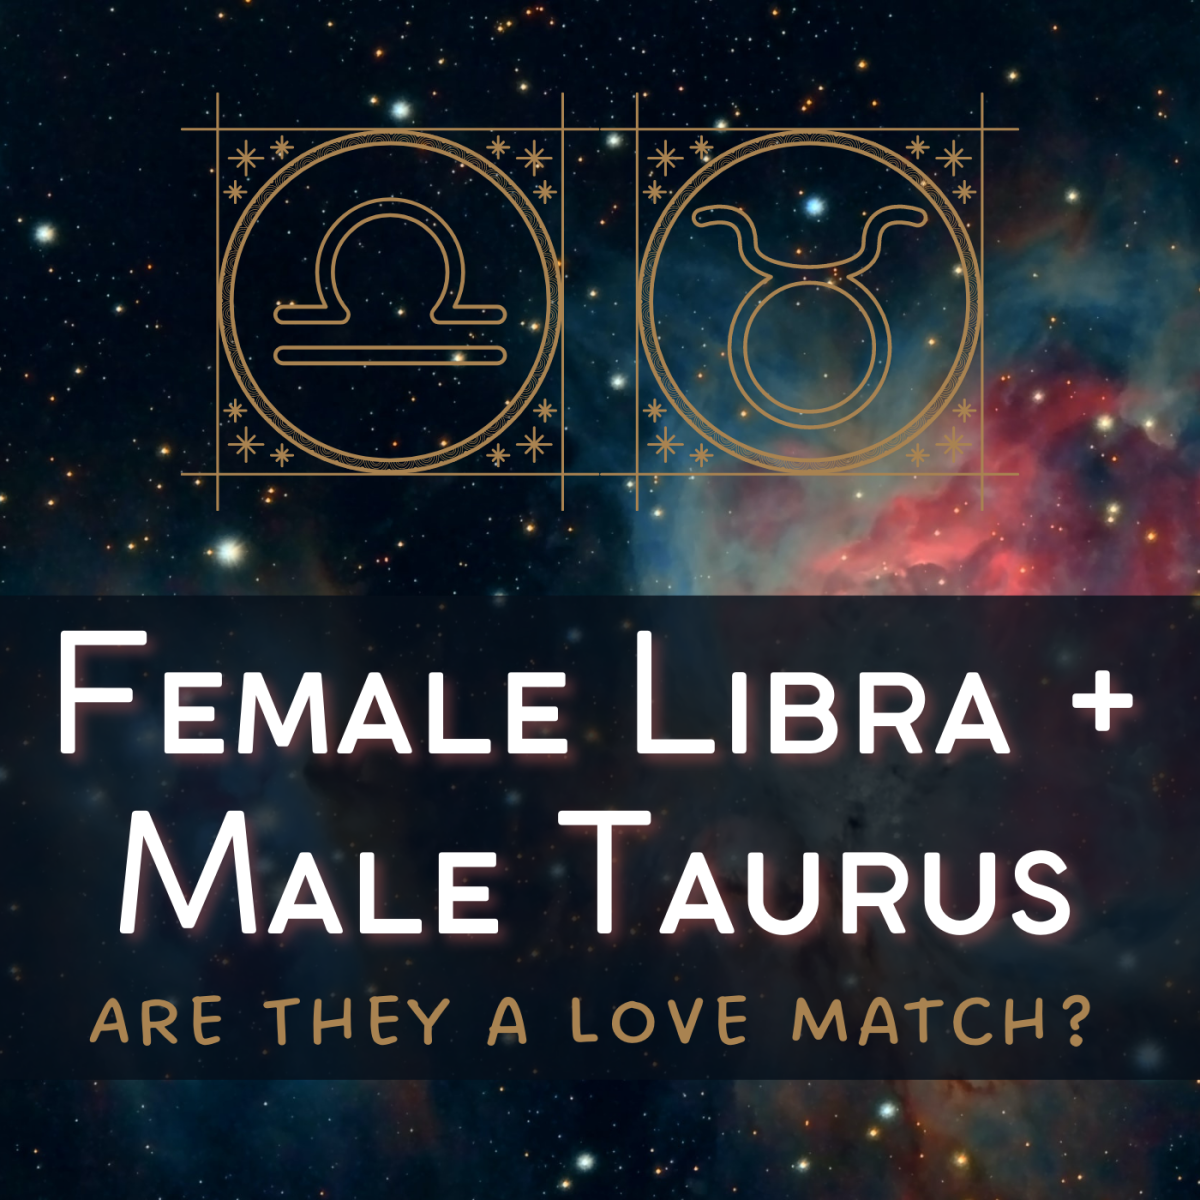 Taurus Man and Libra Woman